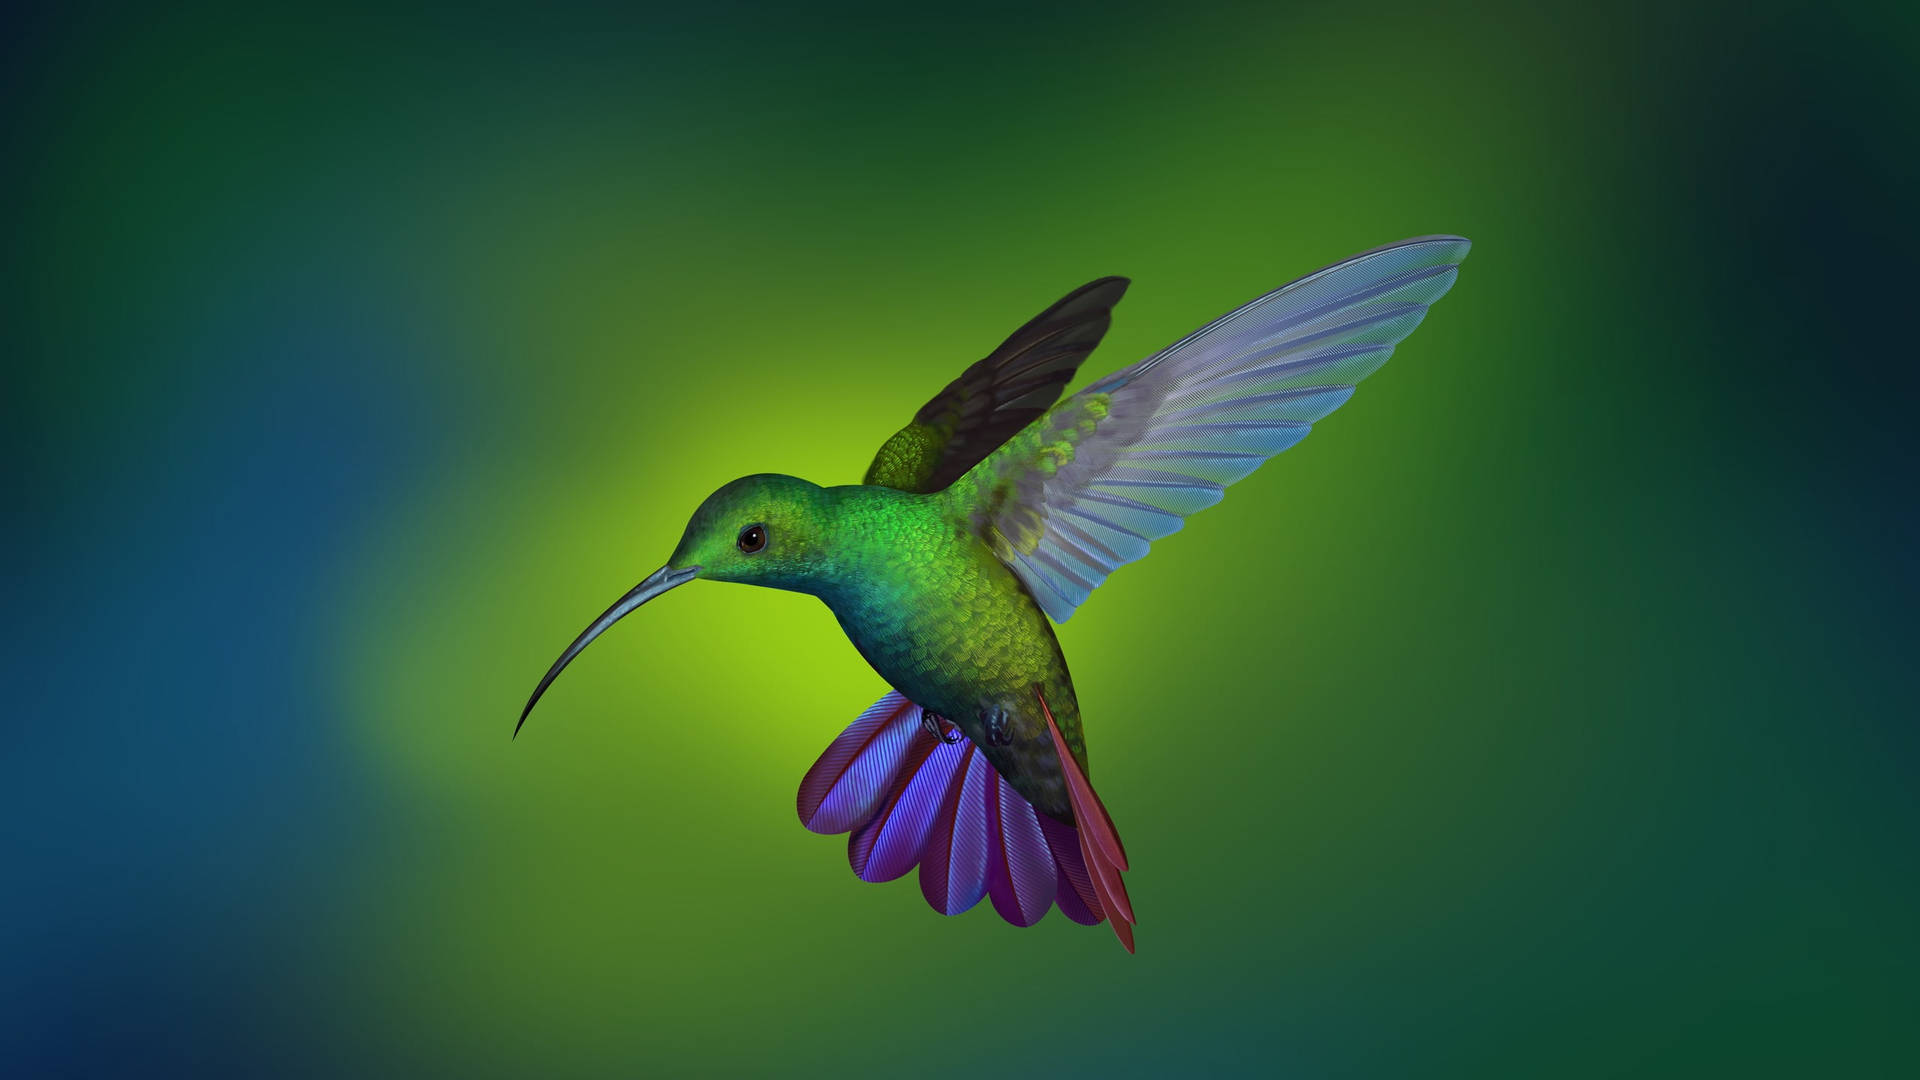 Flying Hummingbird In Digital Art